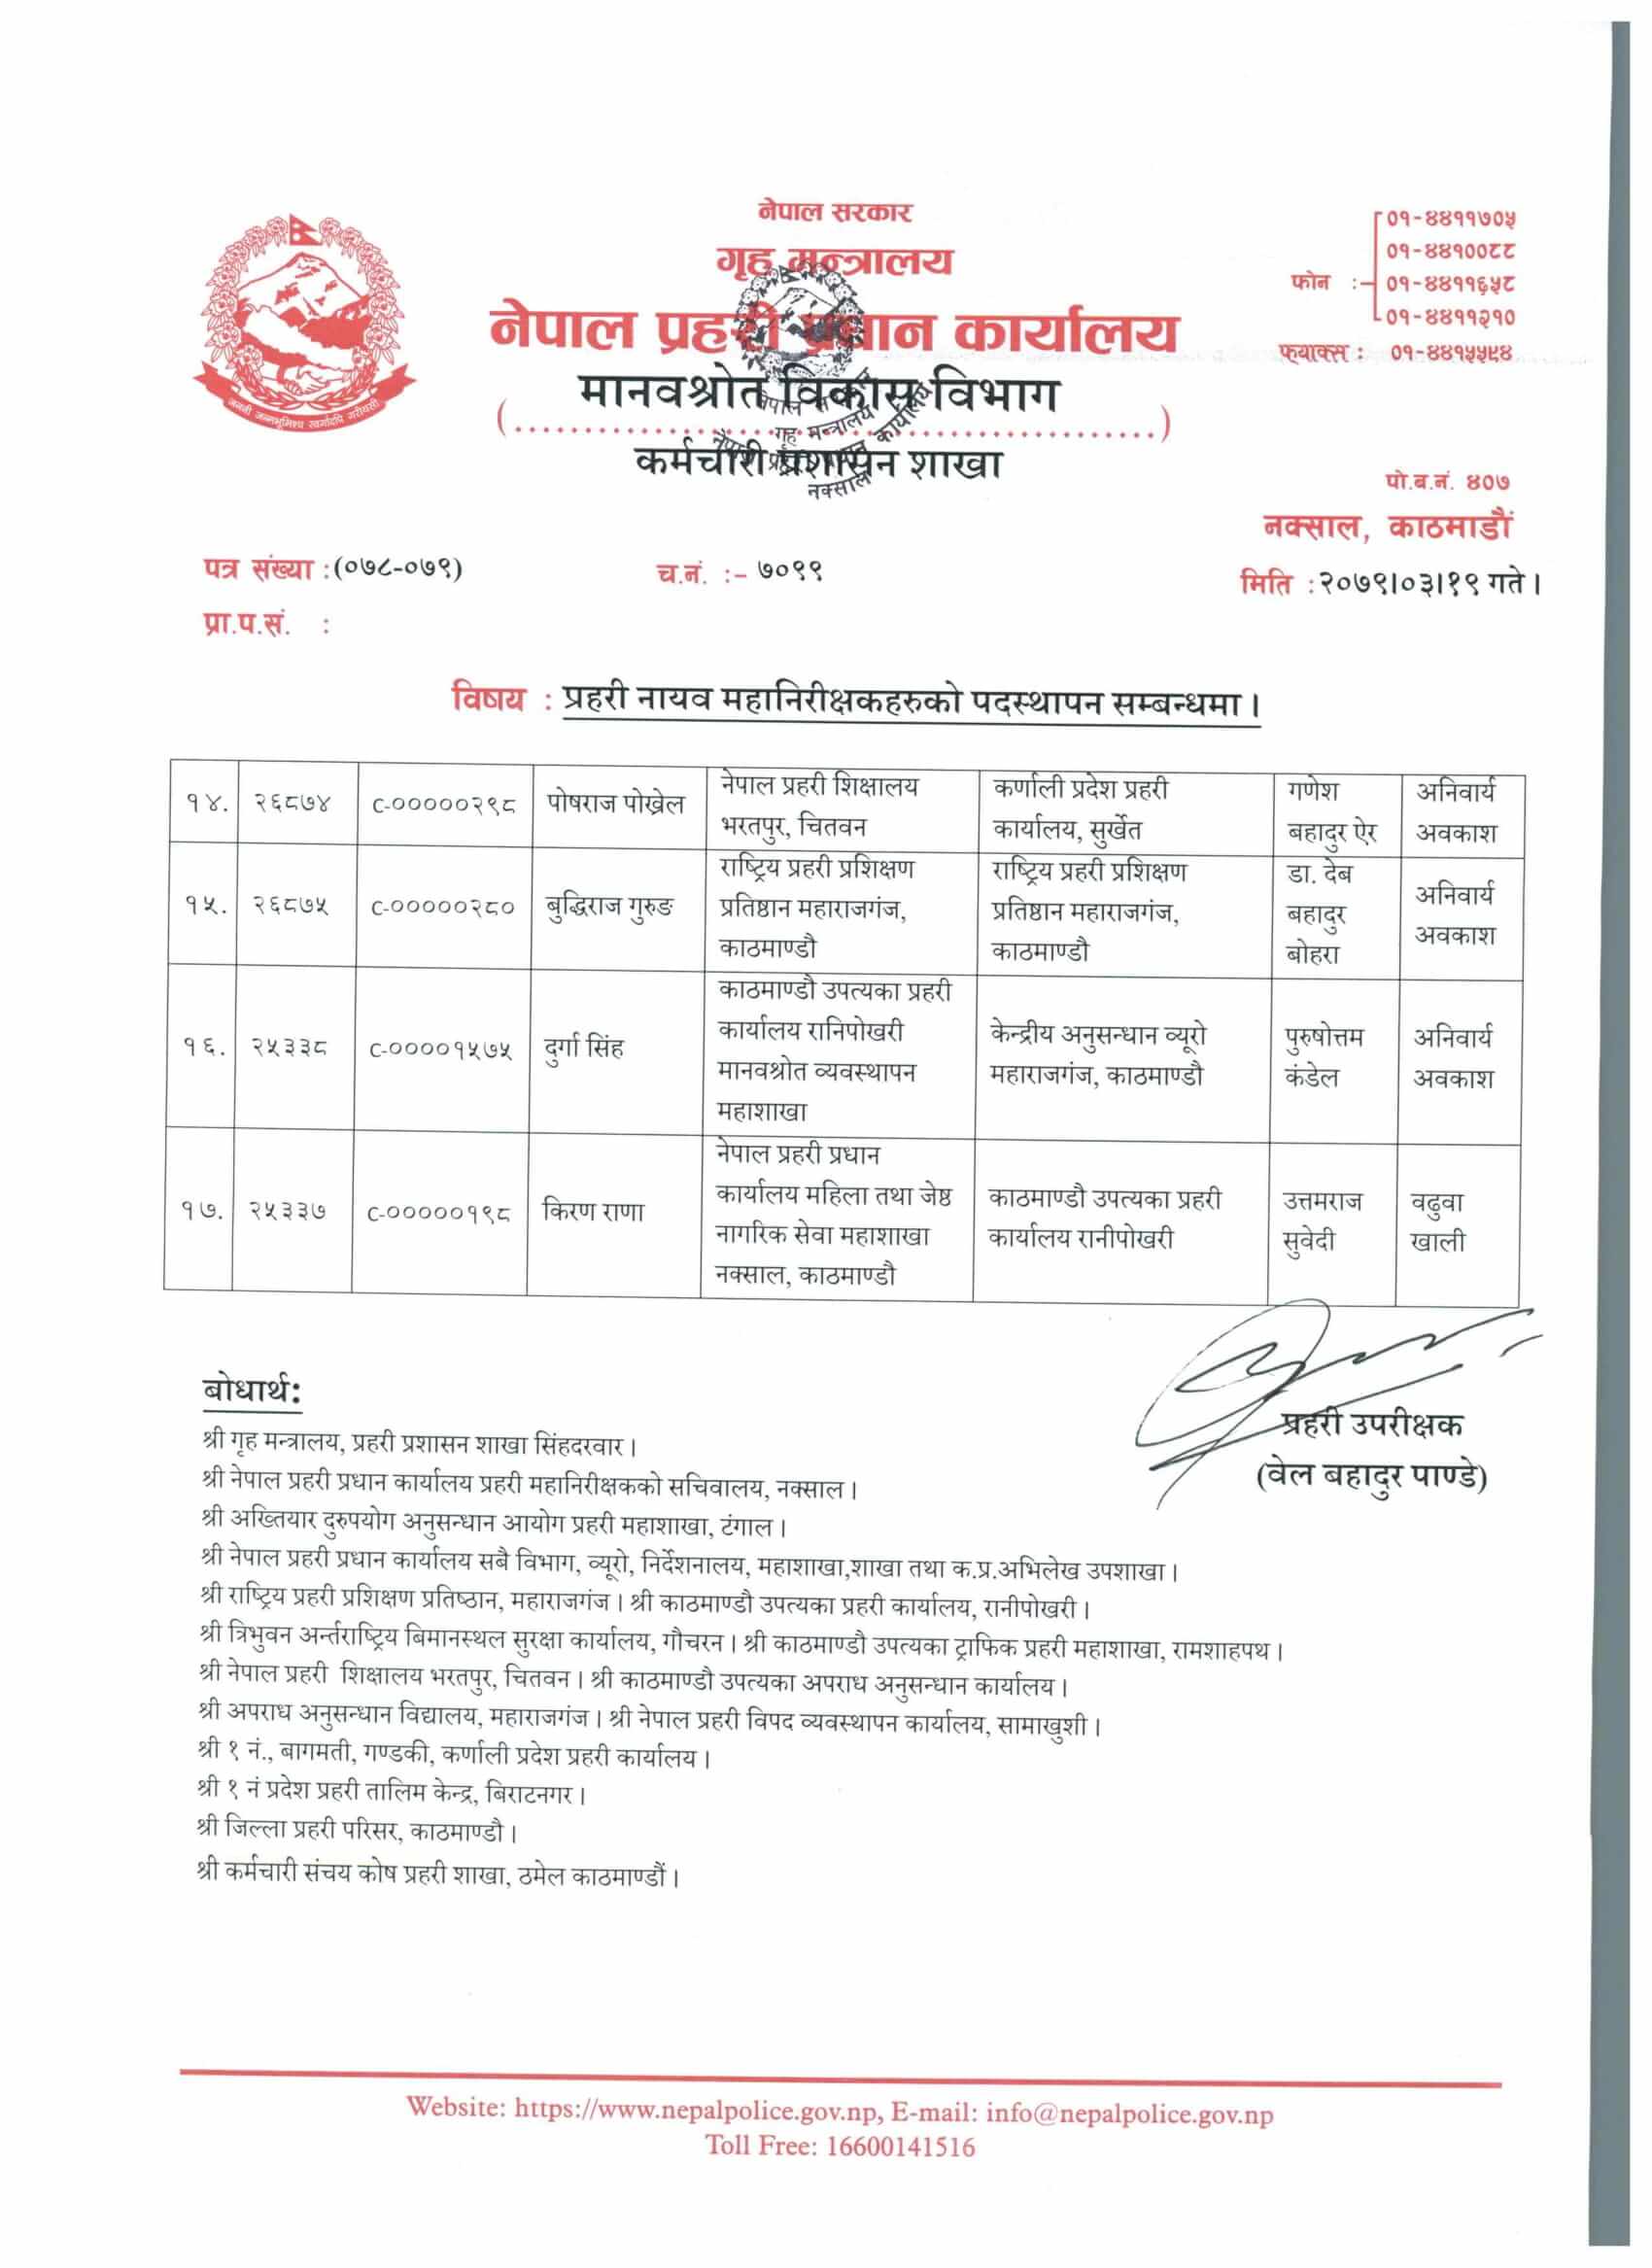 Nepal Police DIG Posting List